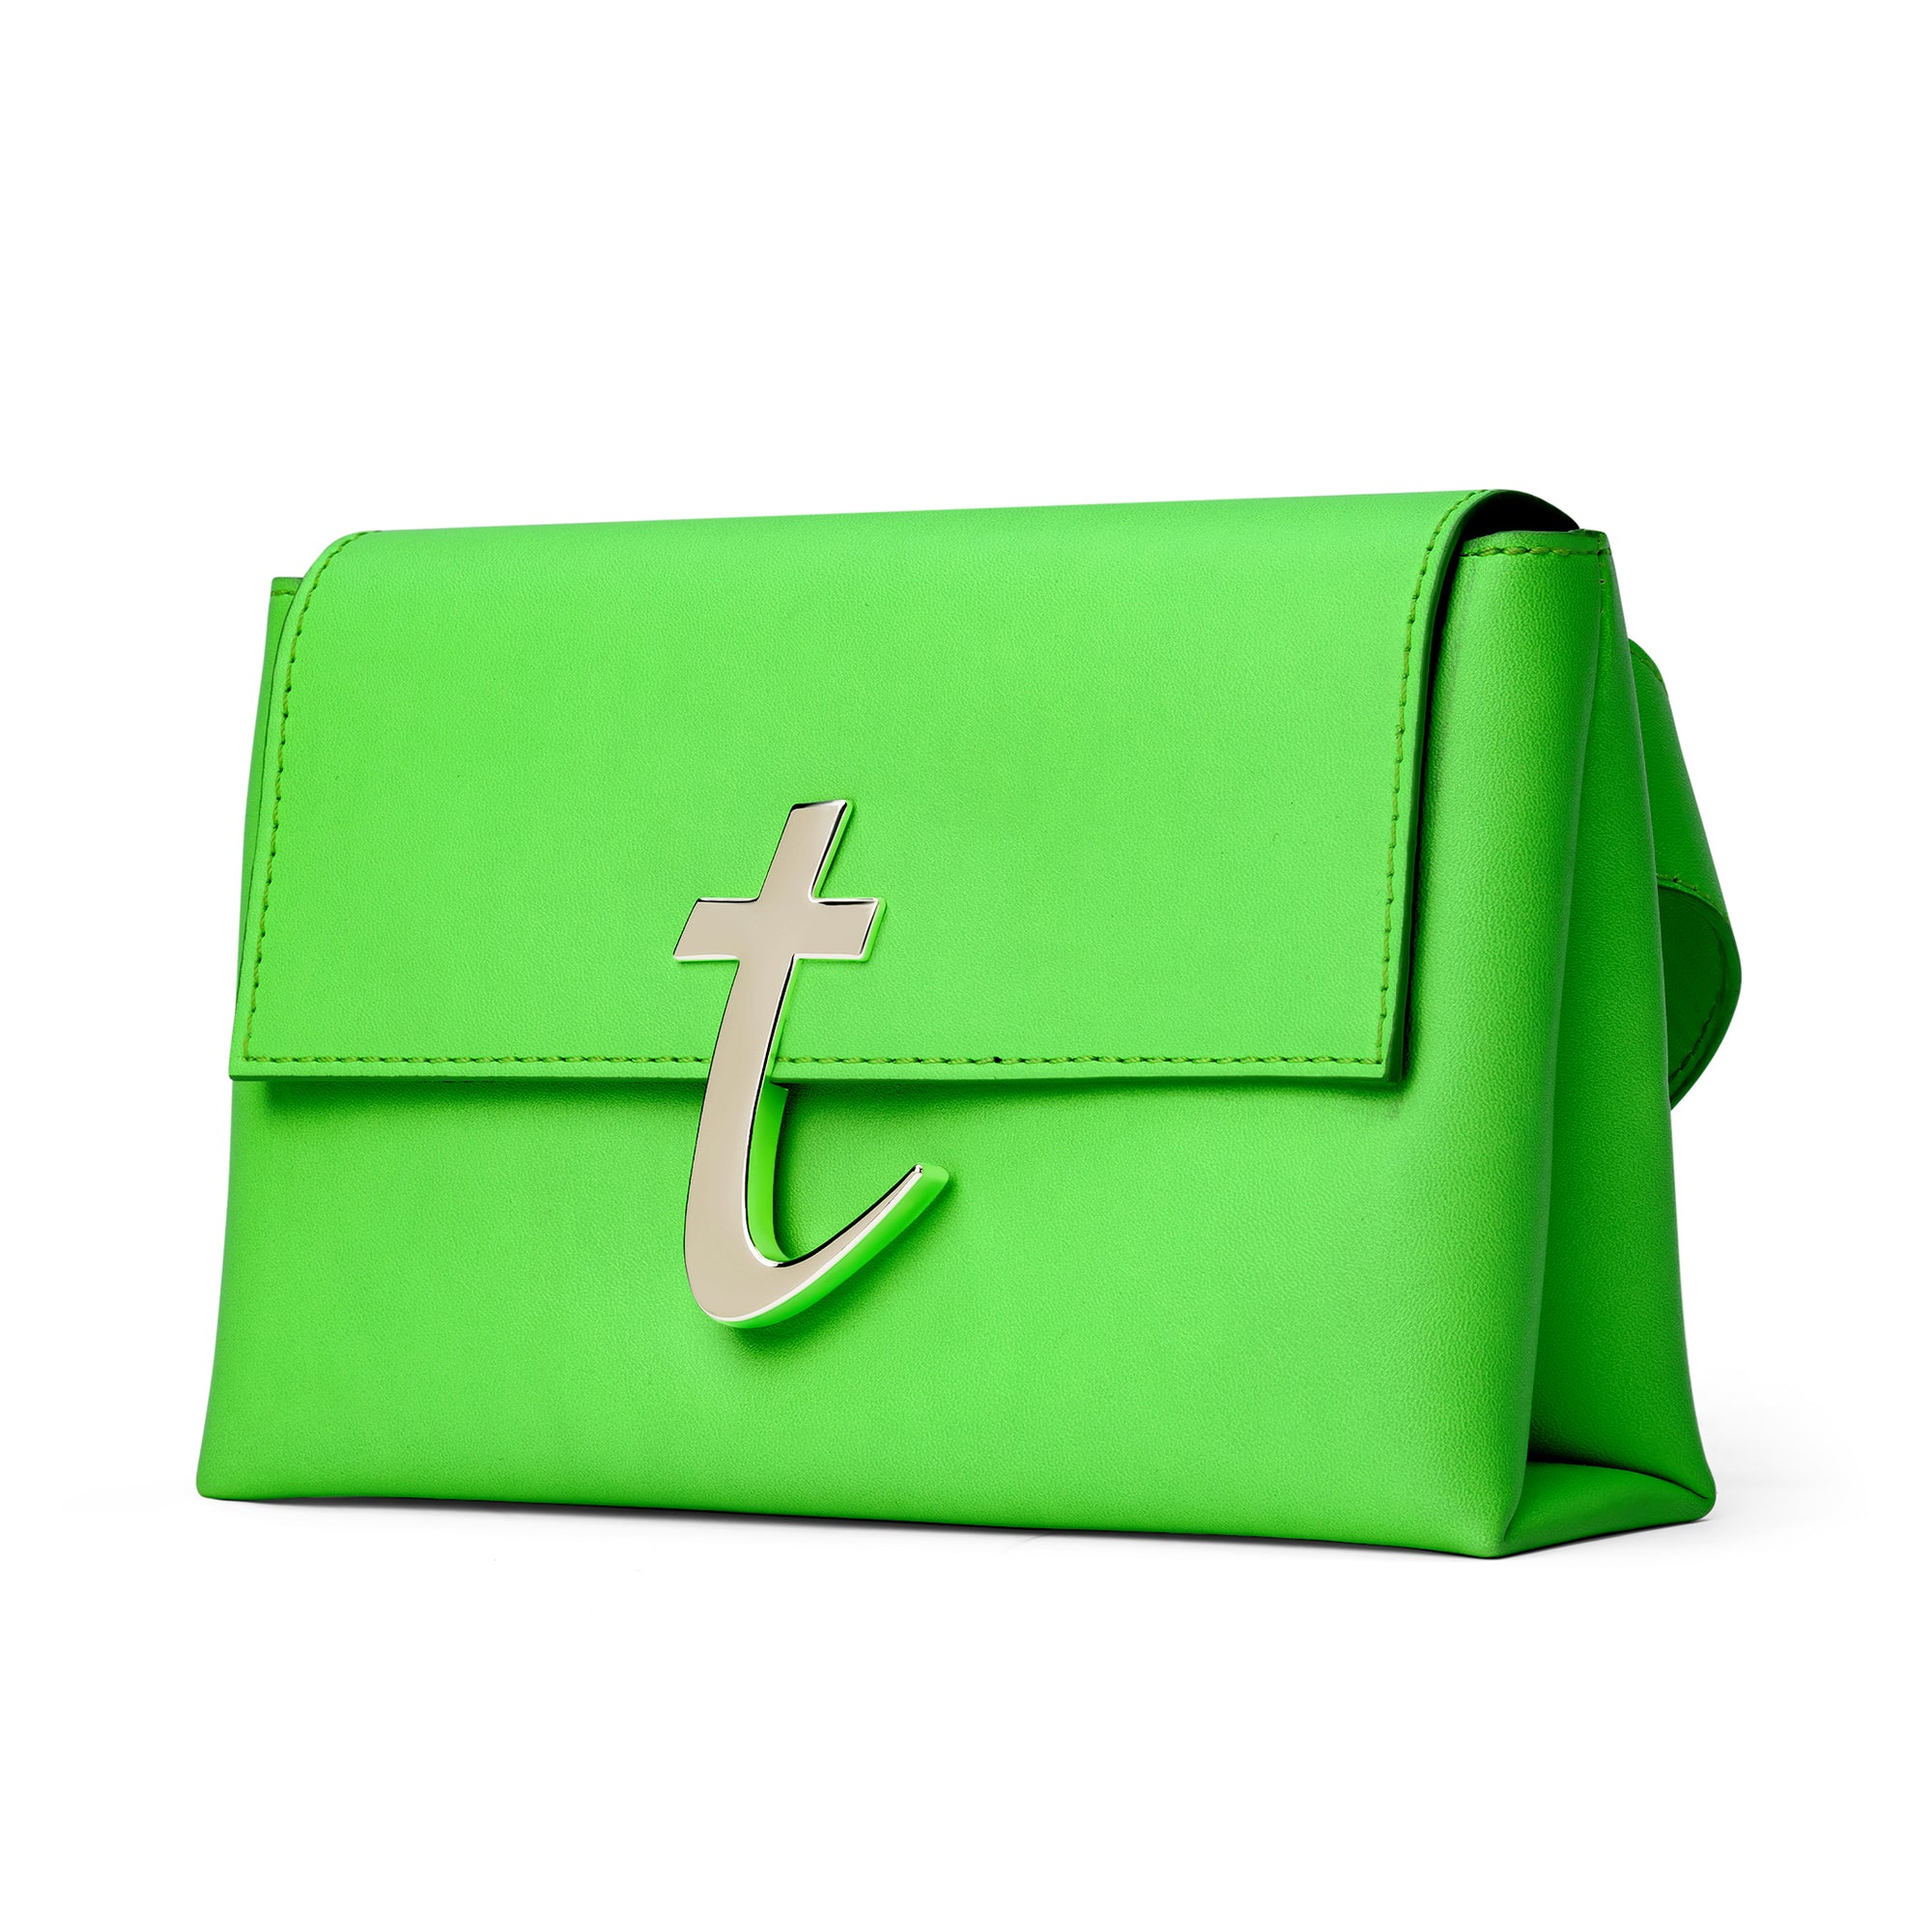 Belt Bag in Neon Green